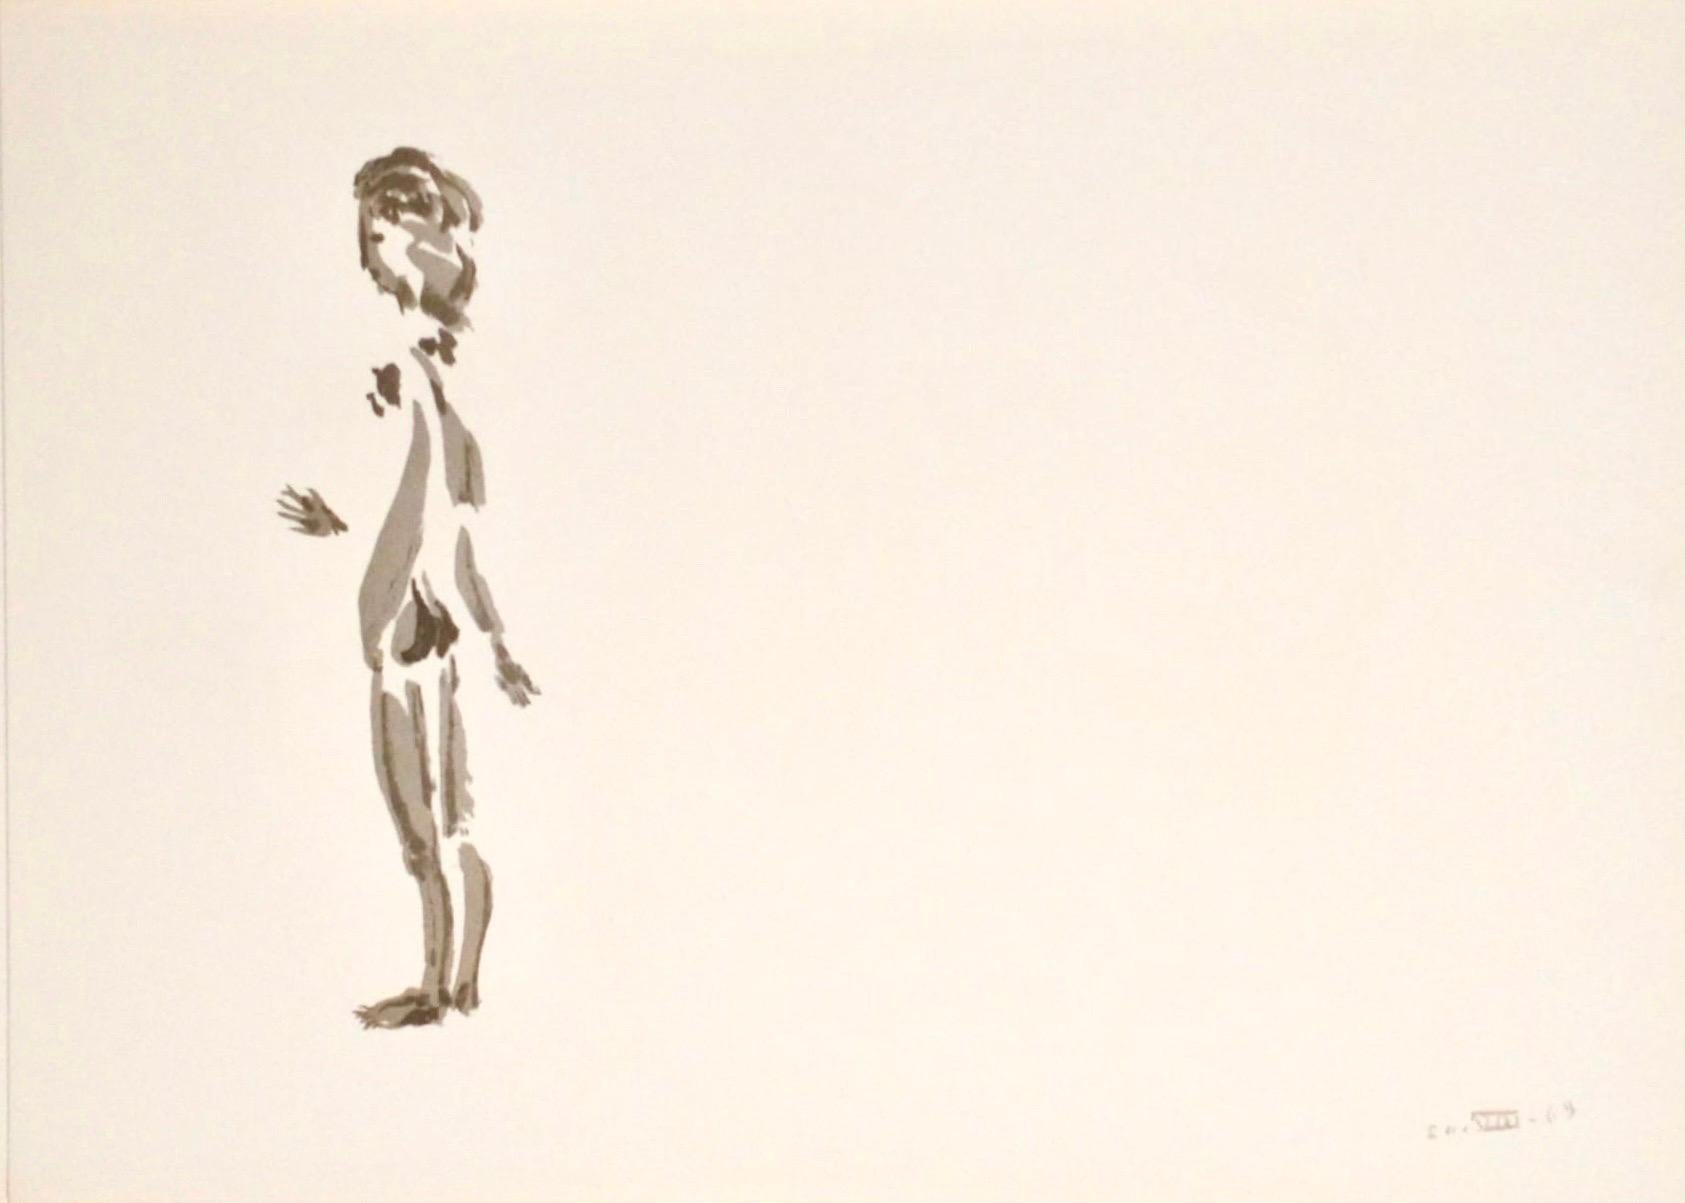 Apeles Fenosa, spanischer Bildhauer Mourlot, Lithographie, Figuren des Abstrakten Expressionismus